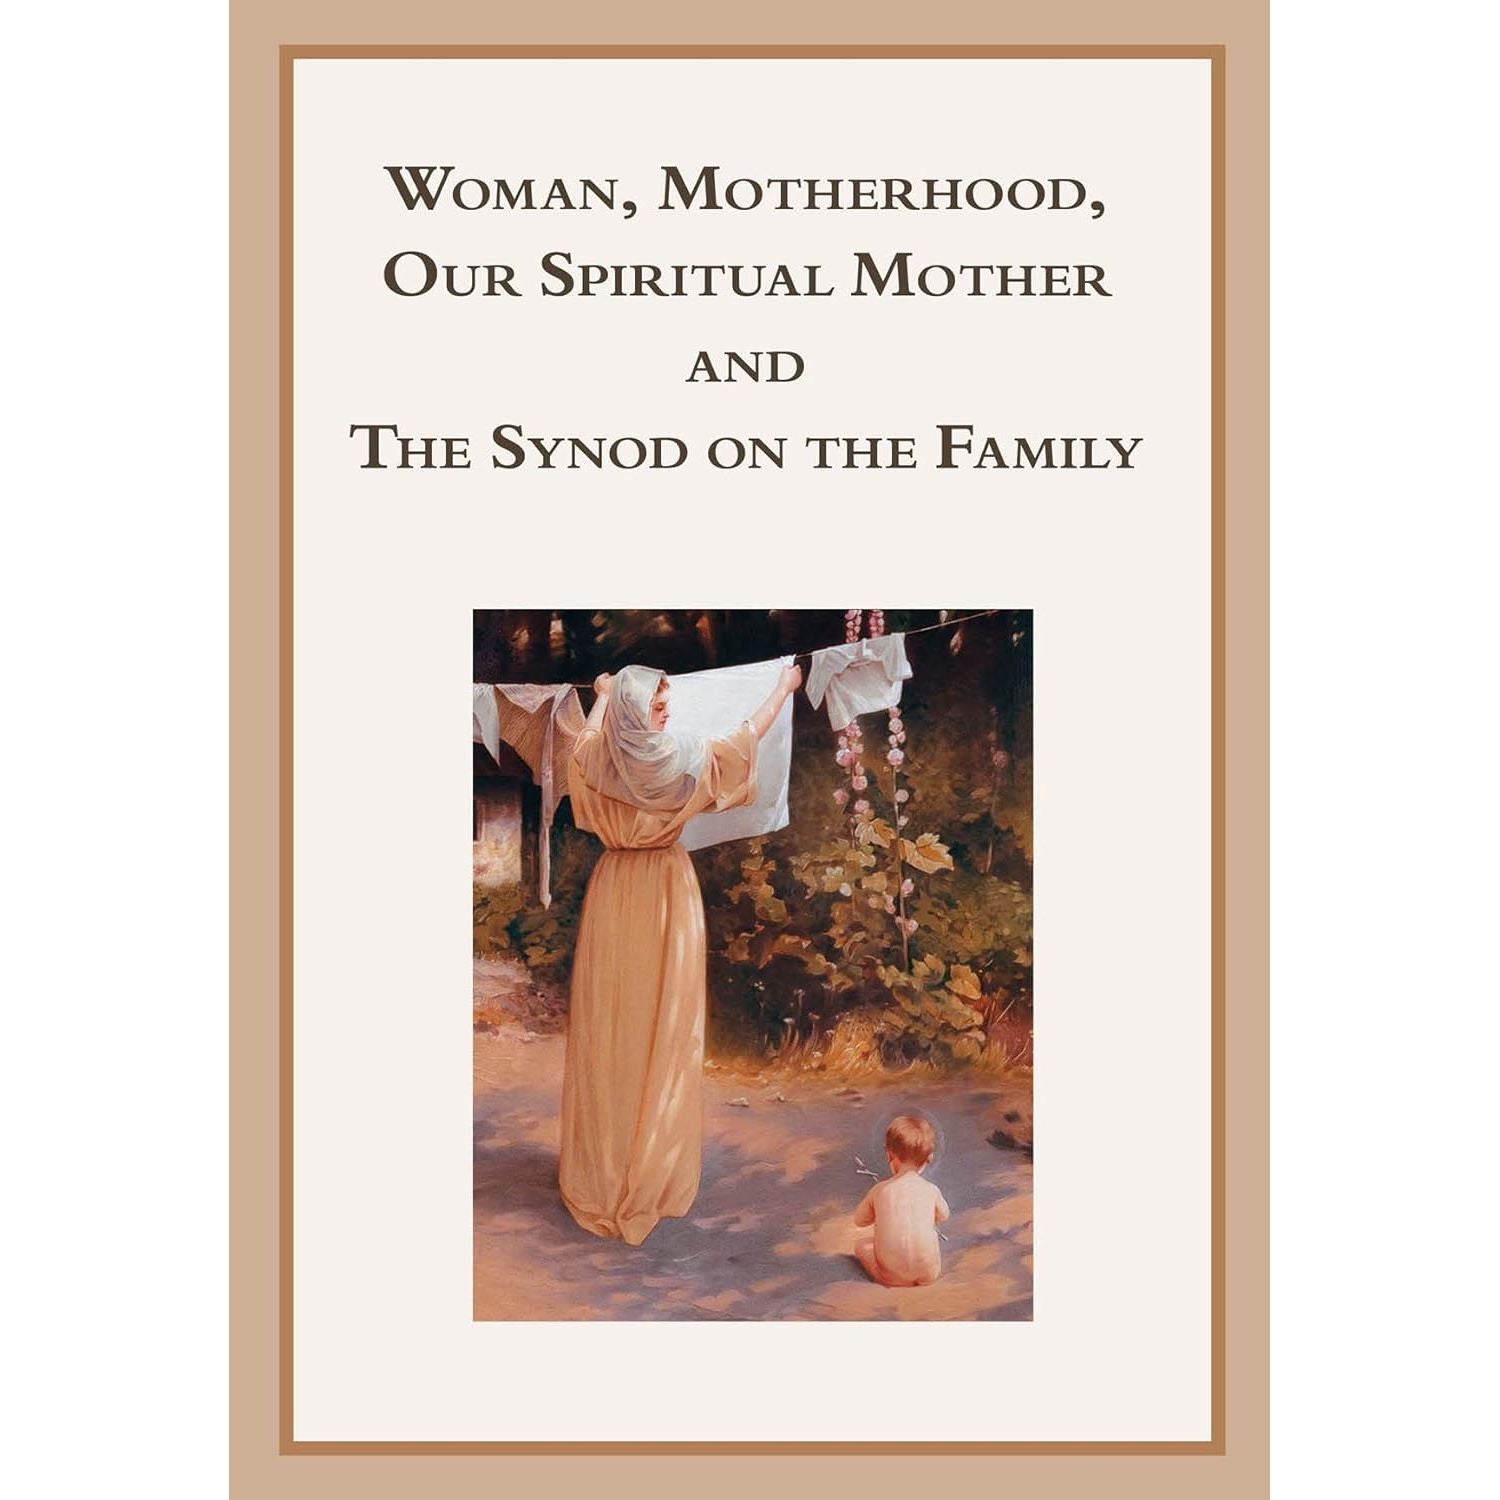 Faith & Family Publications